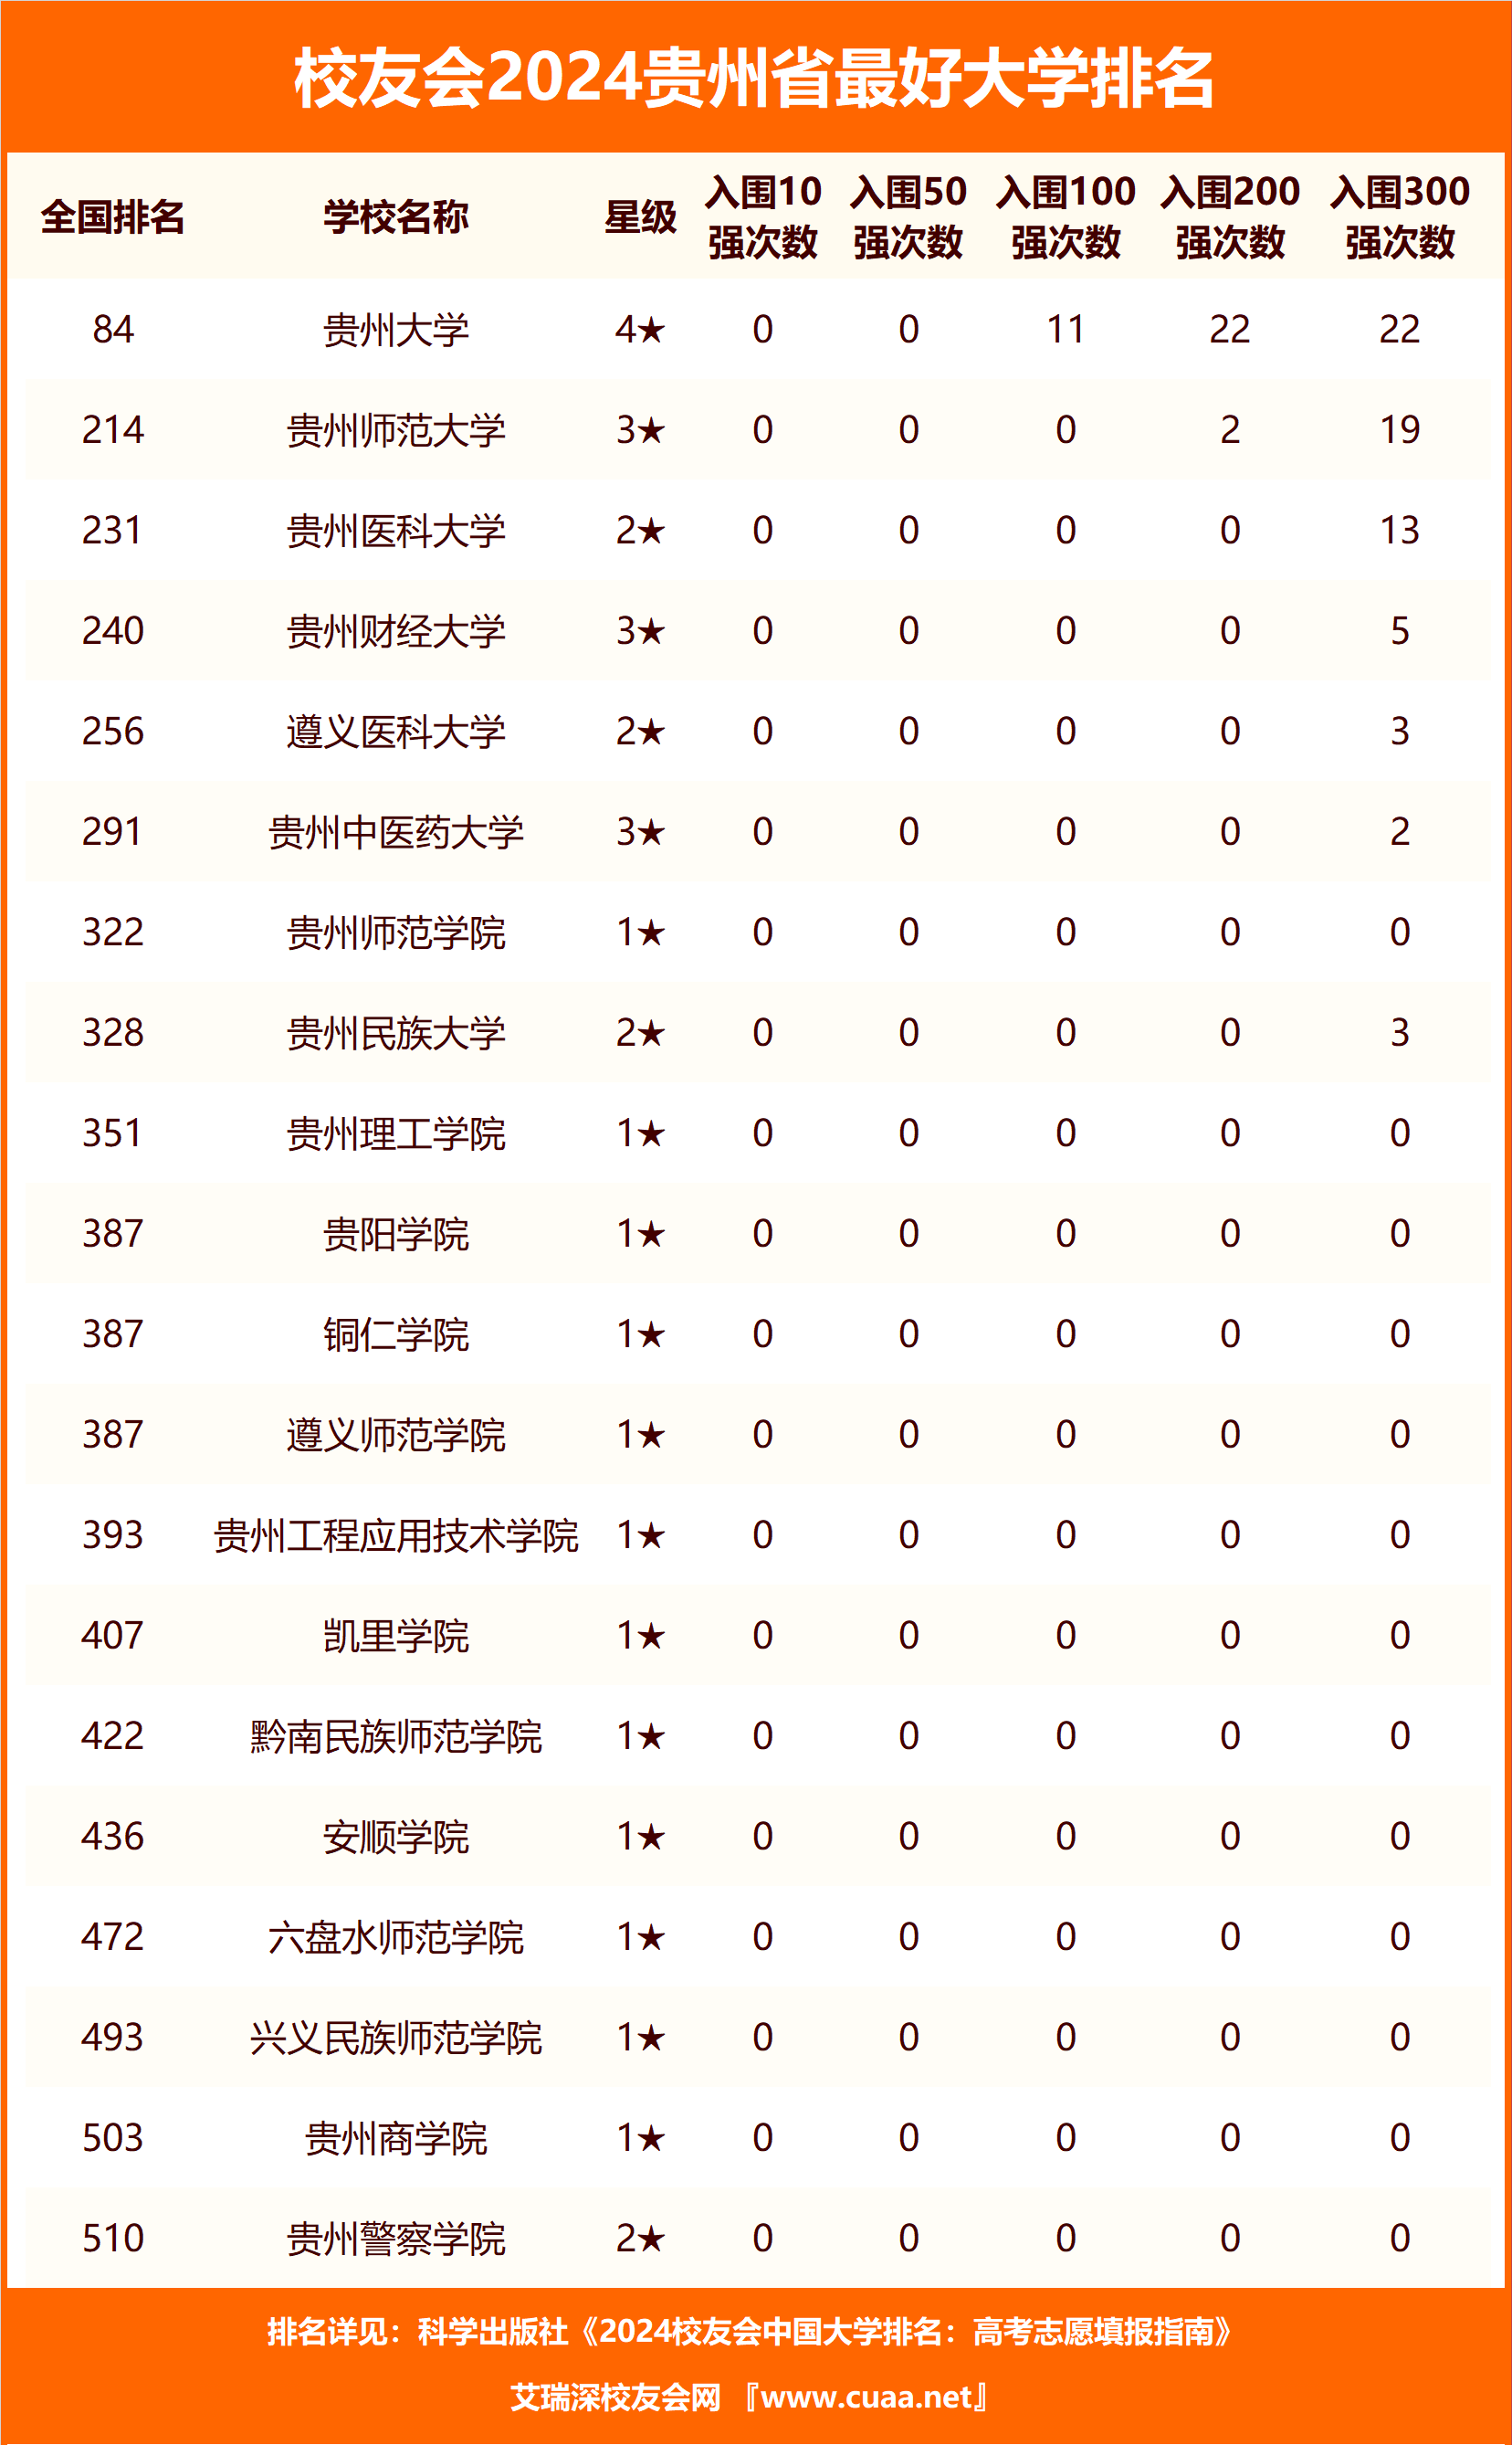 贵州城市职业学院,铜仁职业技术学院水平最高,2021